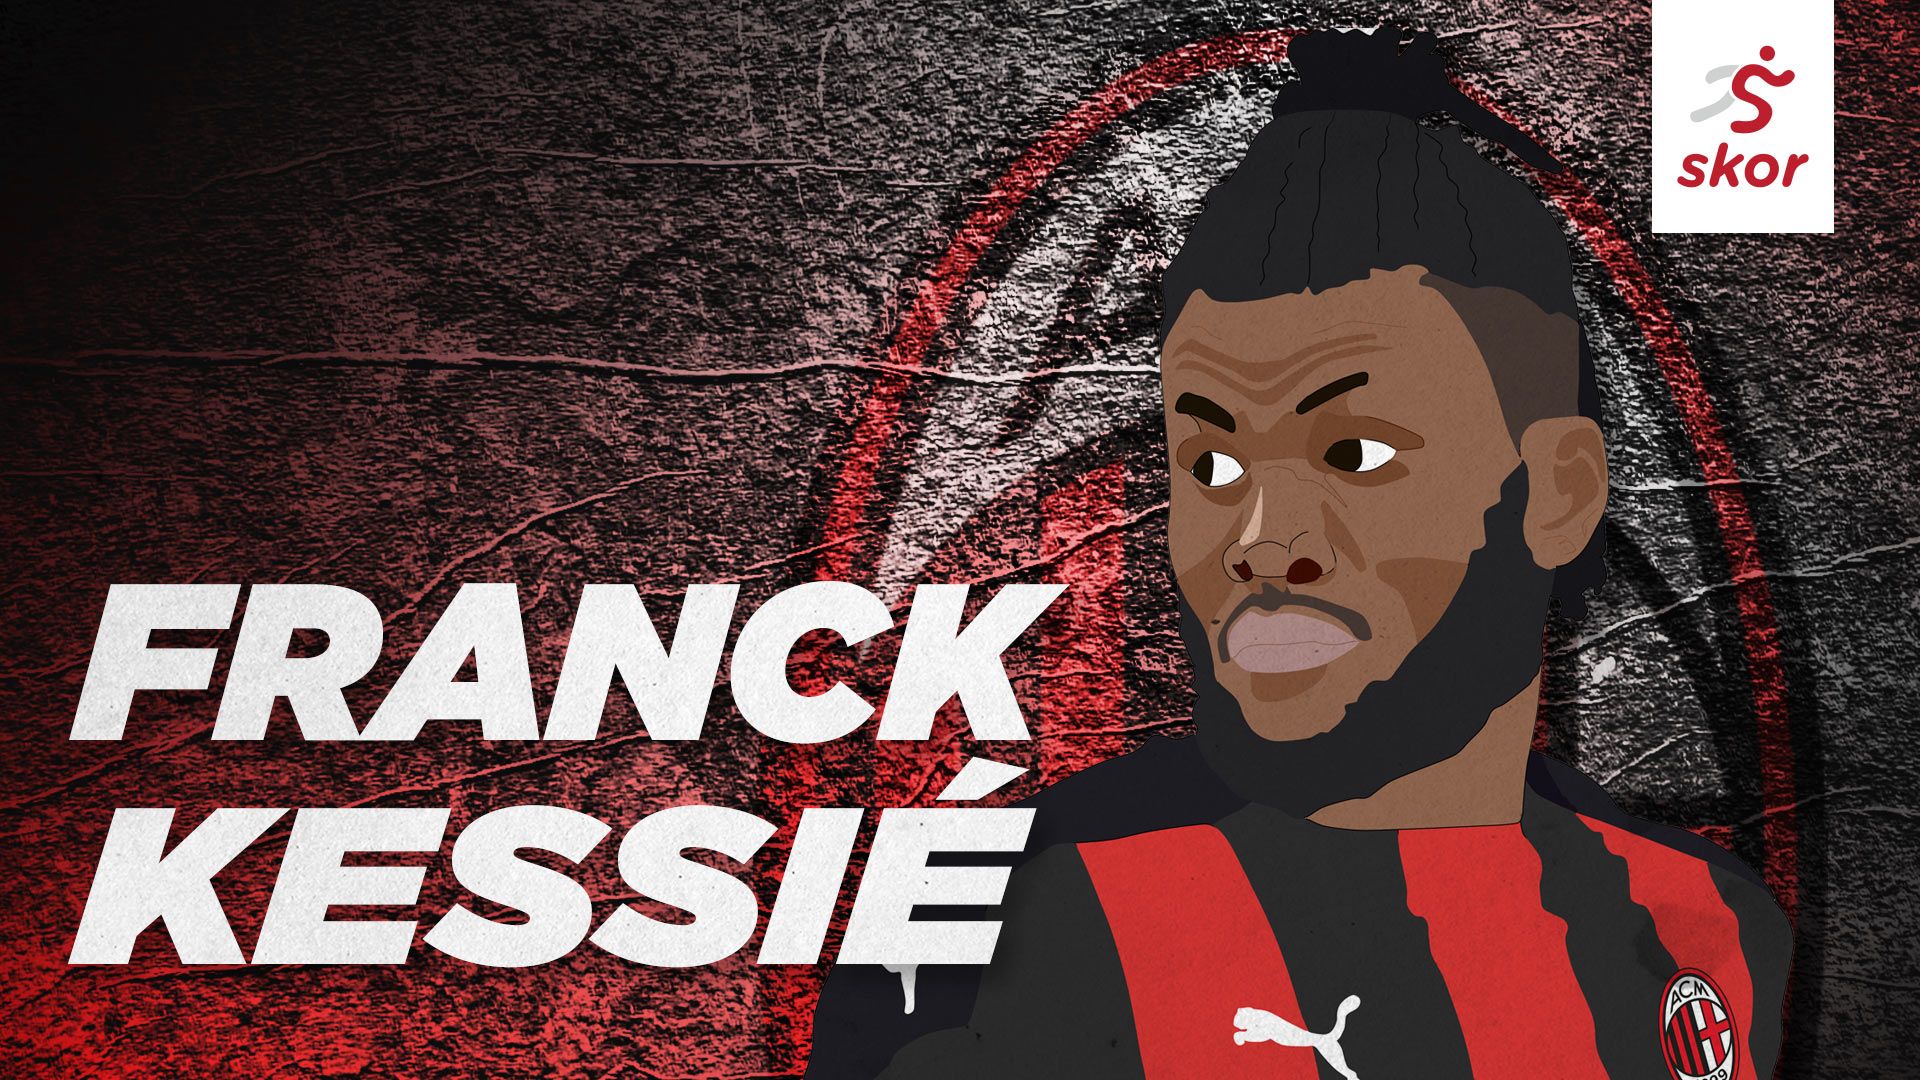 Ilustrasi Franck Kessie kala masih bermain untuk AC Milan.